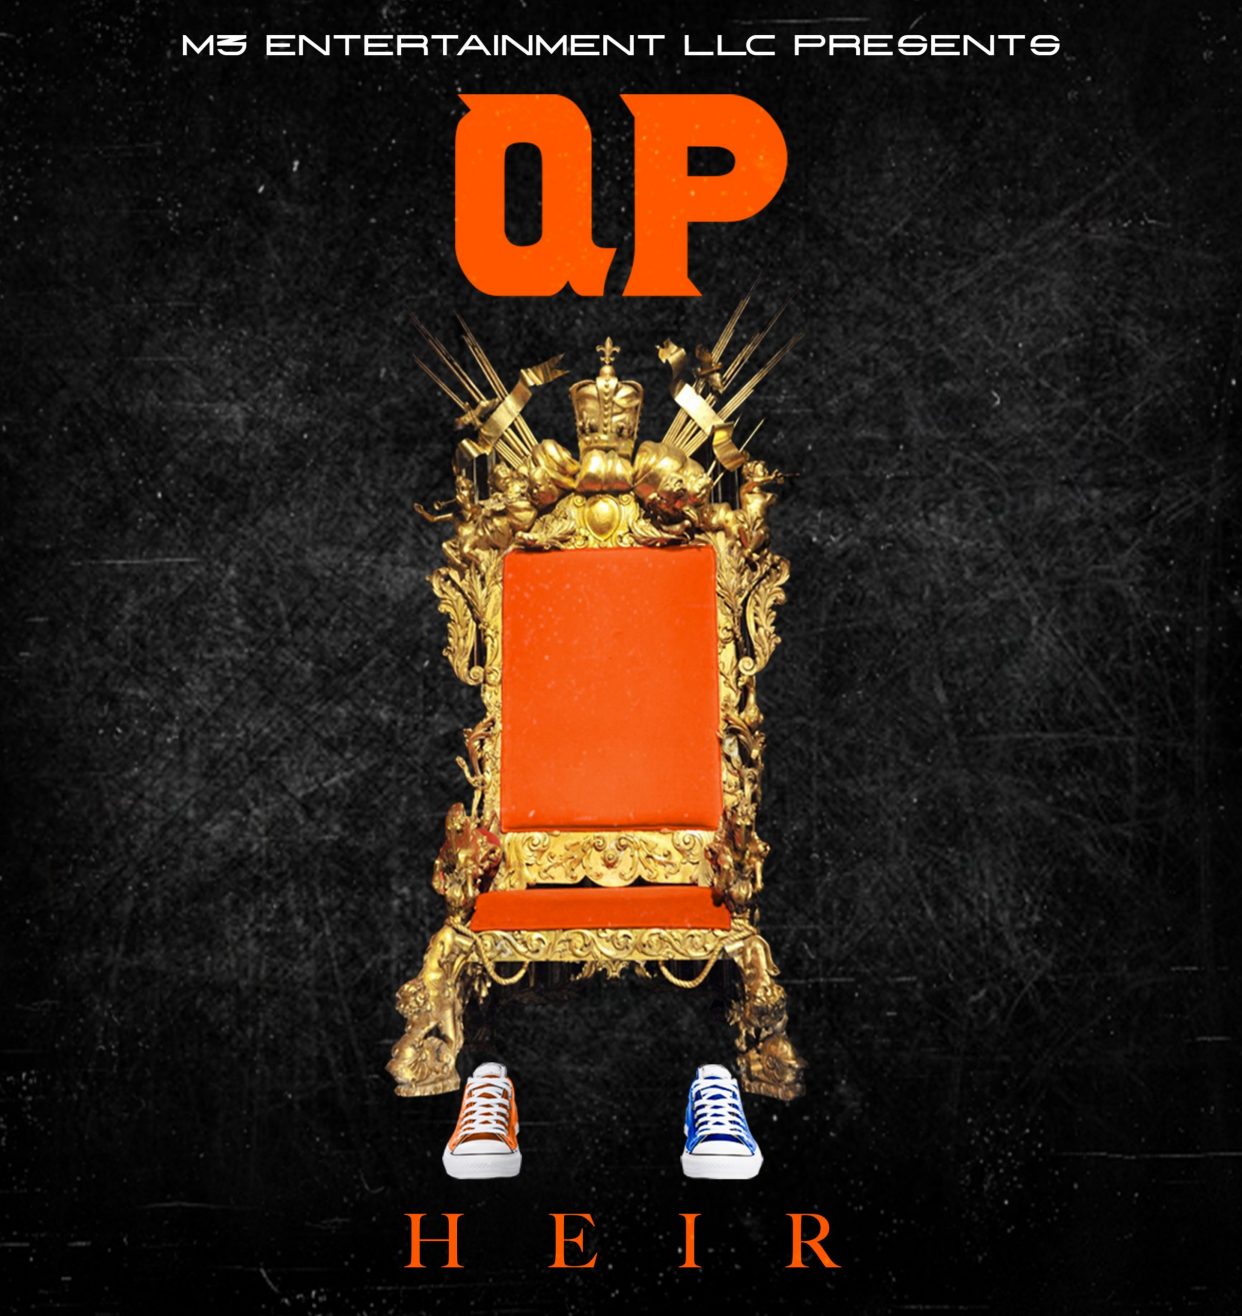 Qp album cover